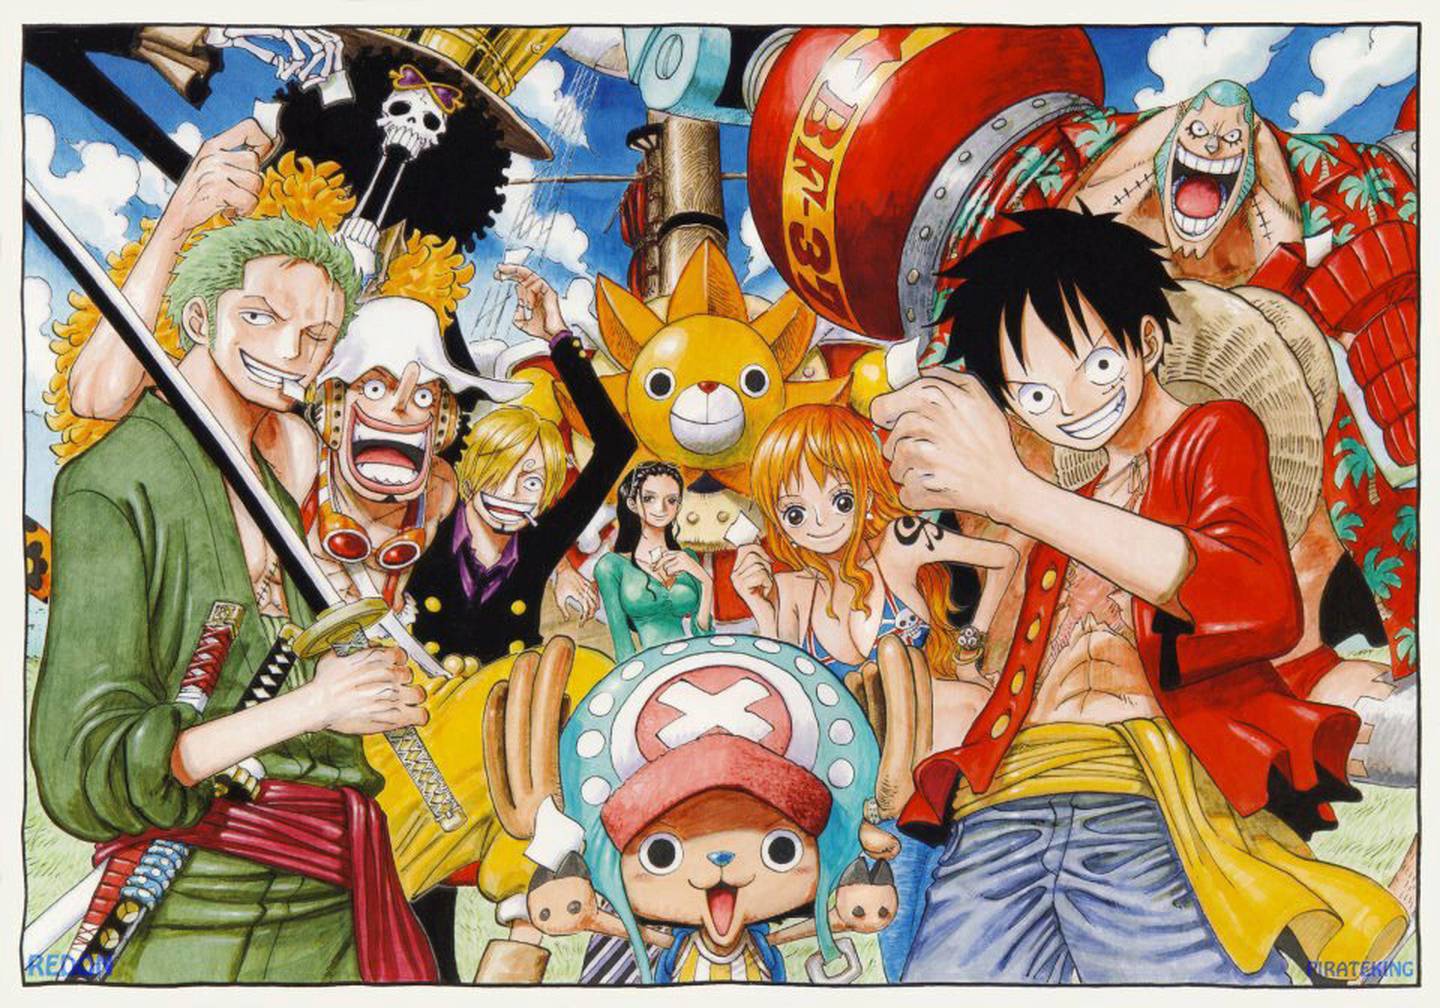 Gastos de envío bisonte articulo Si le gusta 'One Piece' debe leer 'Wanted!', el manga que dio pie al  exitoso animé | La Nación